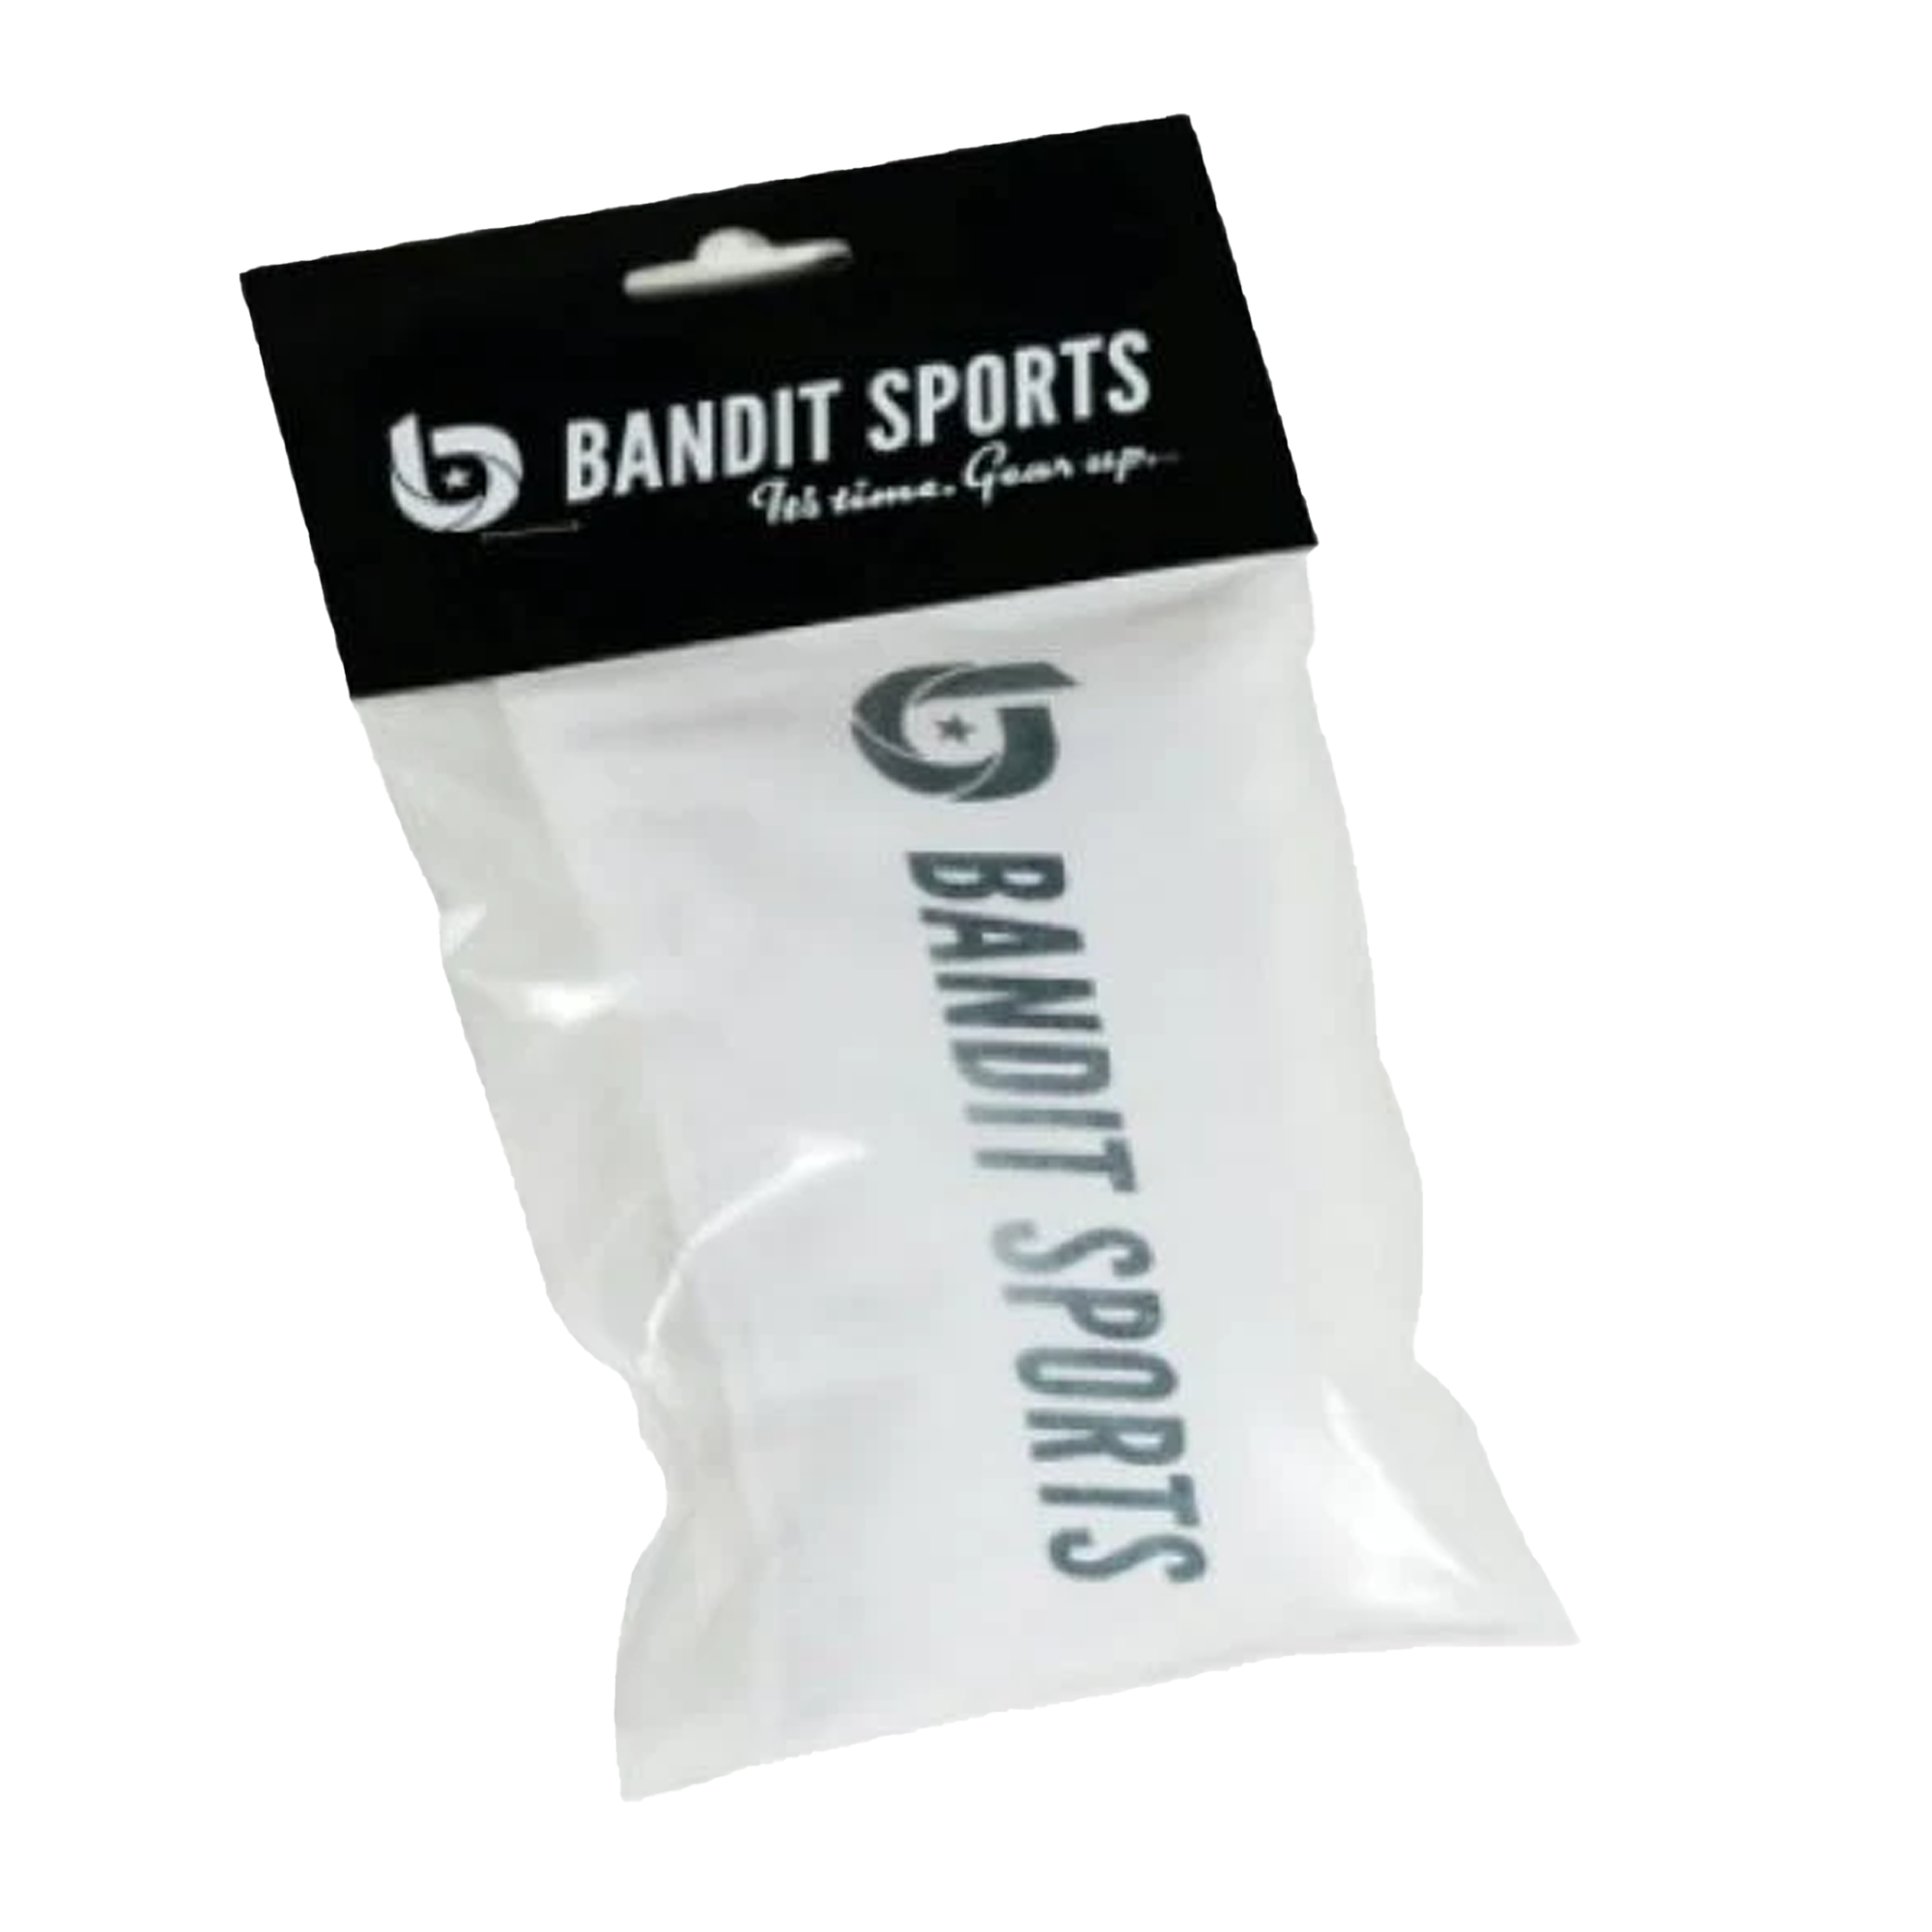 Bandit sports rosin bag, baseball rosin bag